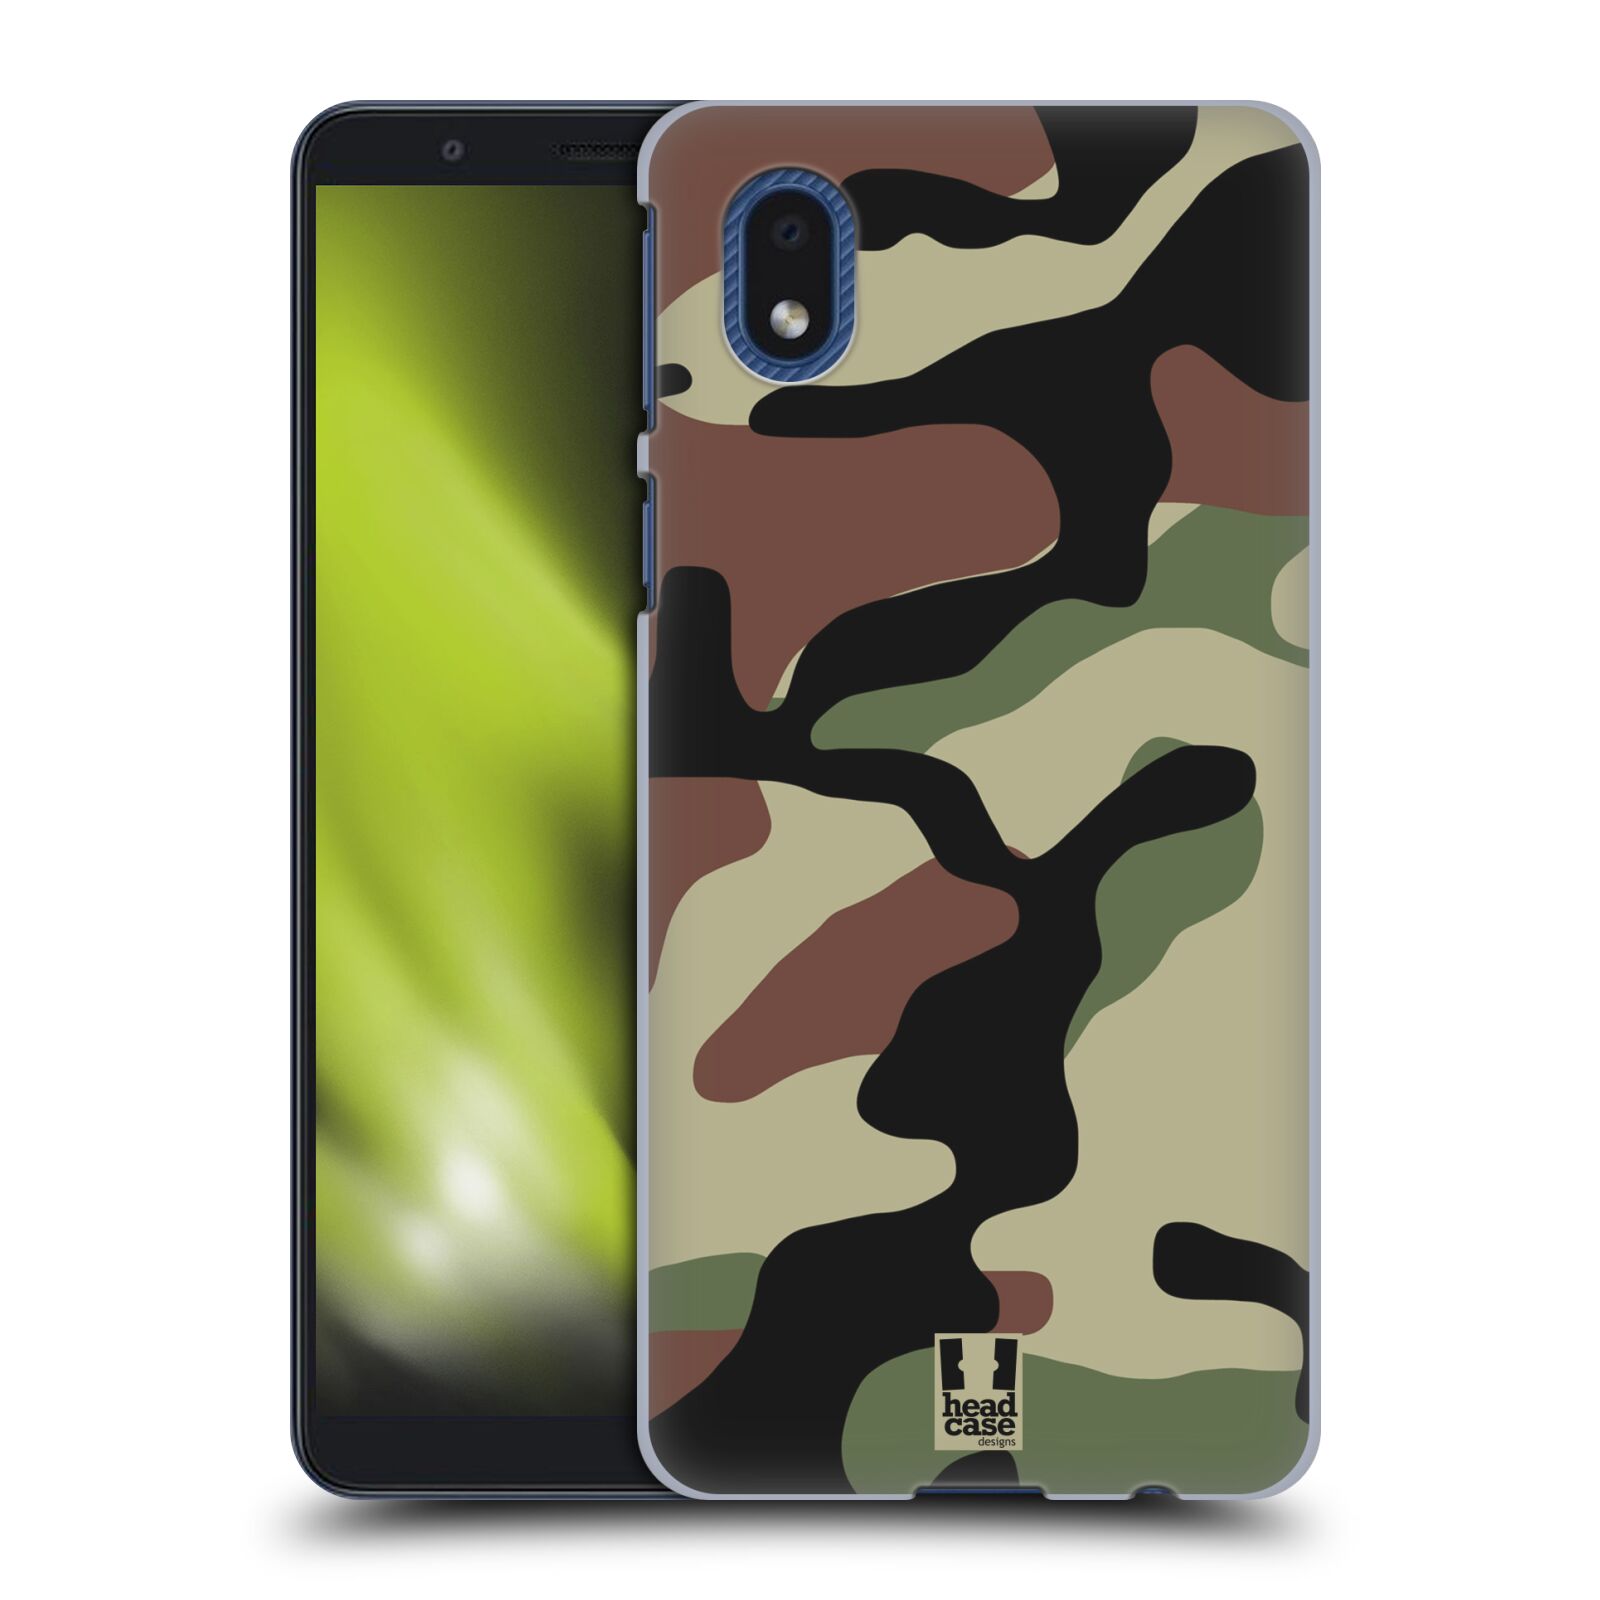 Pouzdro na mobil Samsung Galaxy A01 CORE - HEAD CASE - Kamufláž les